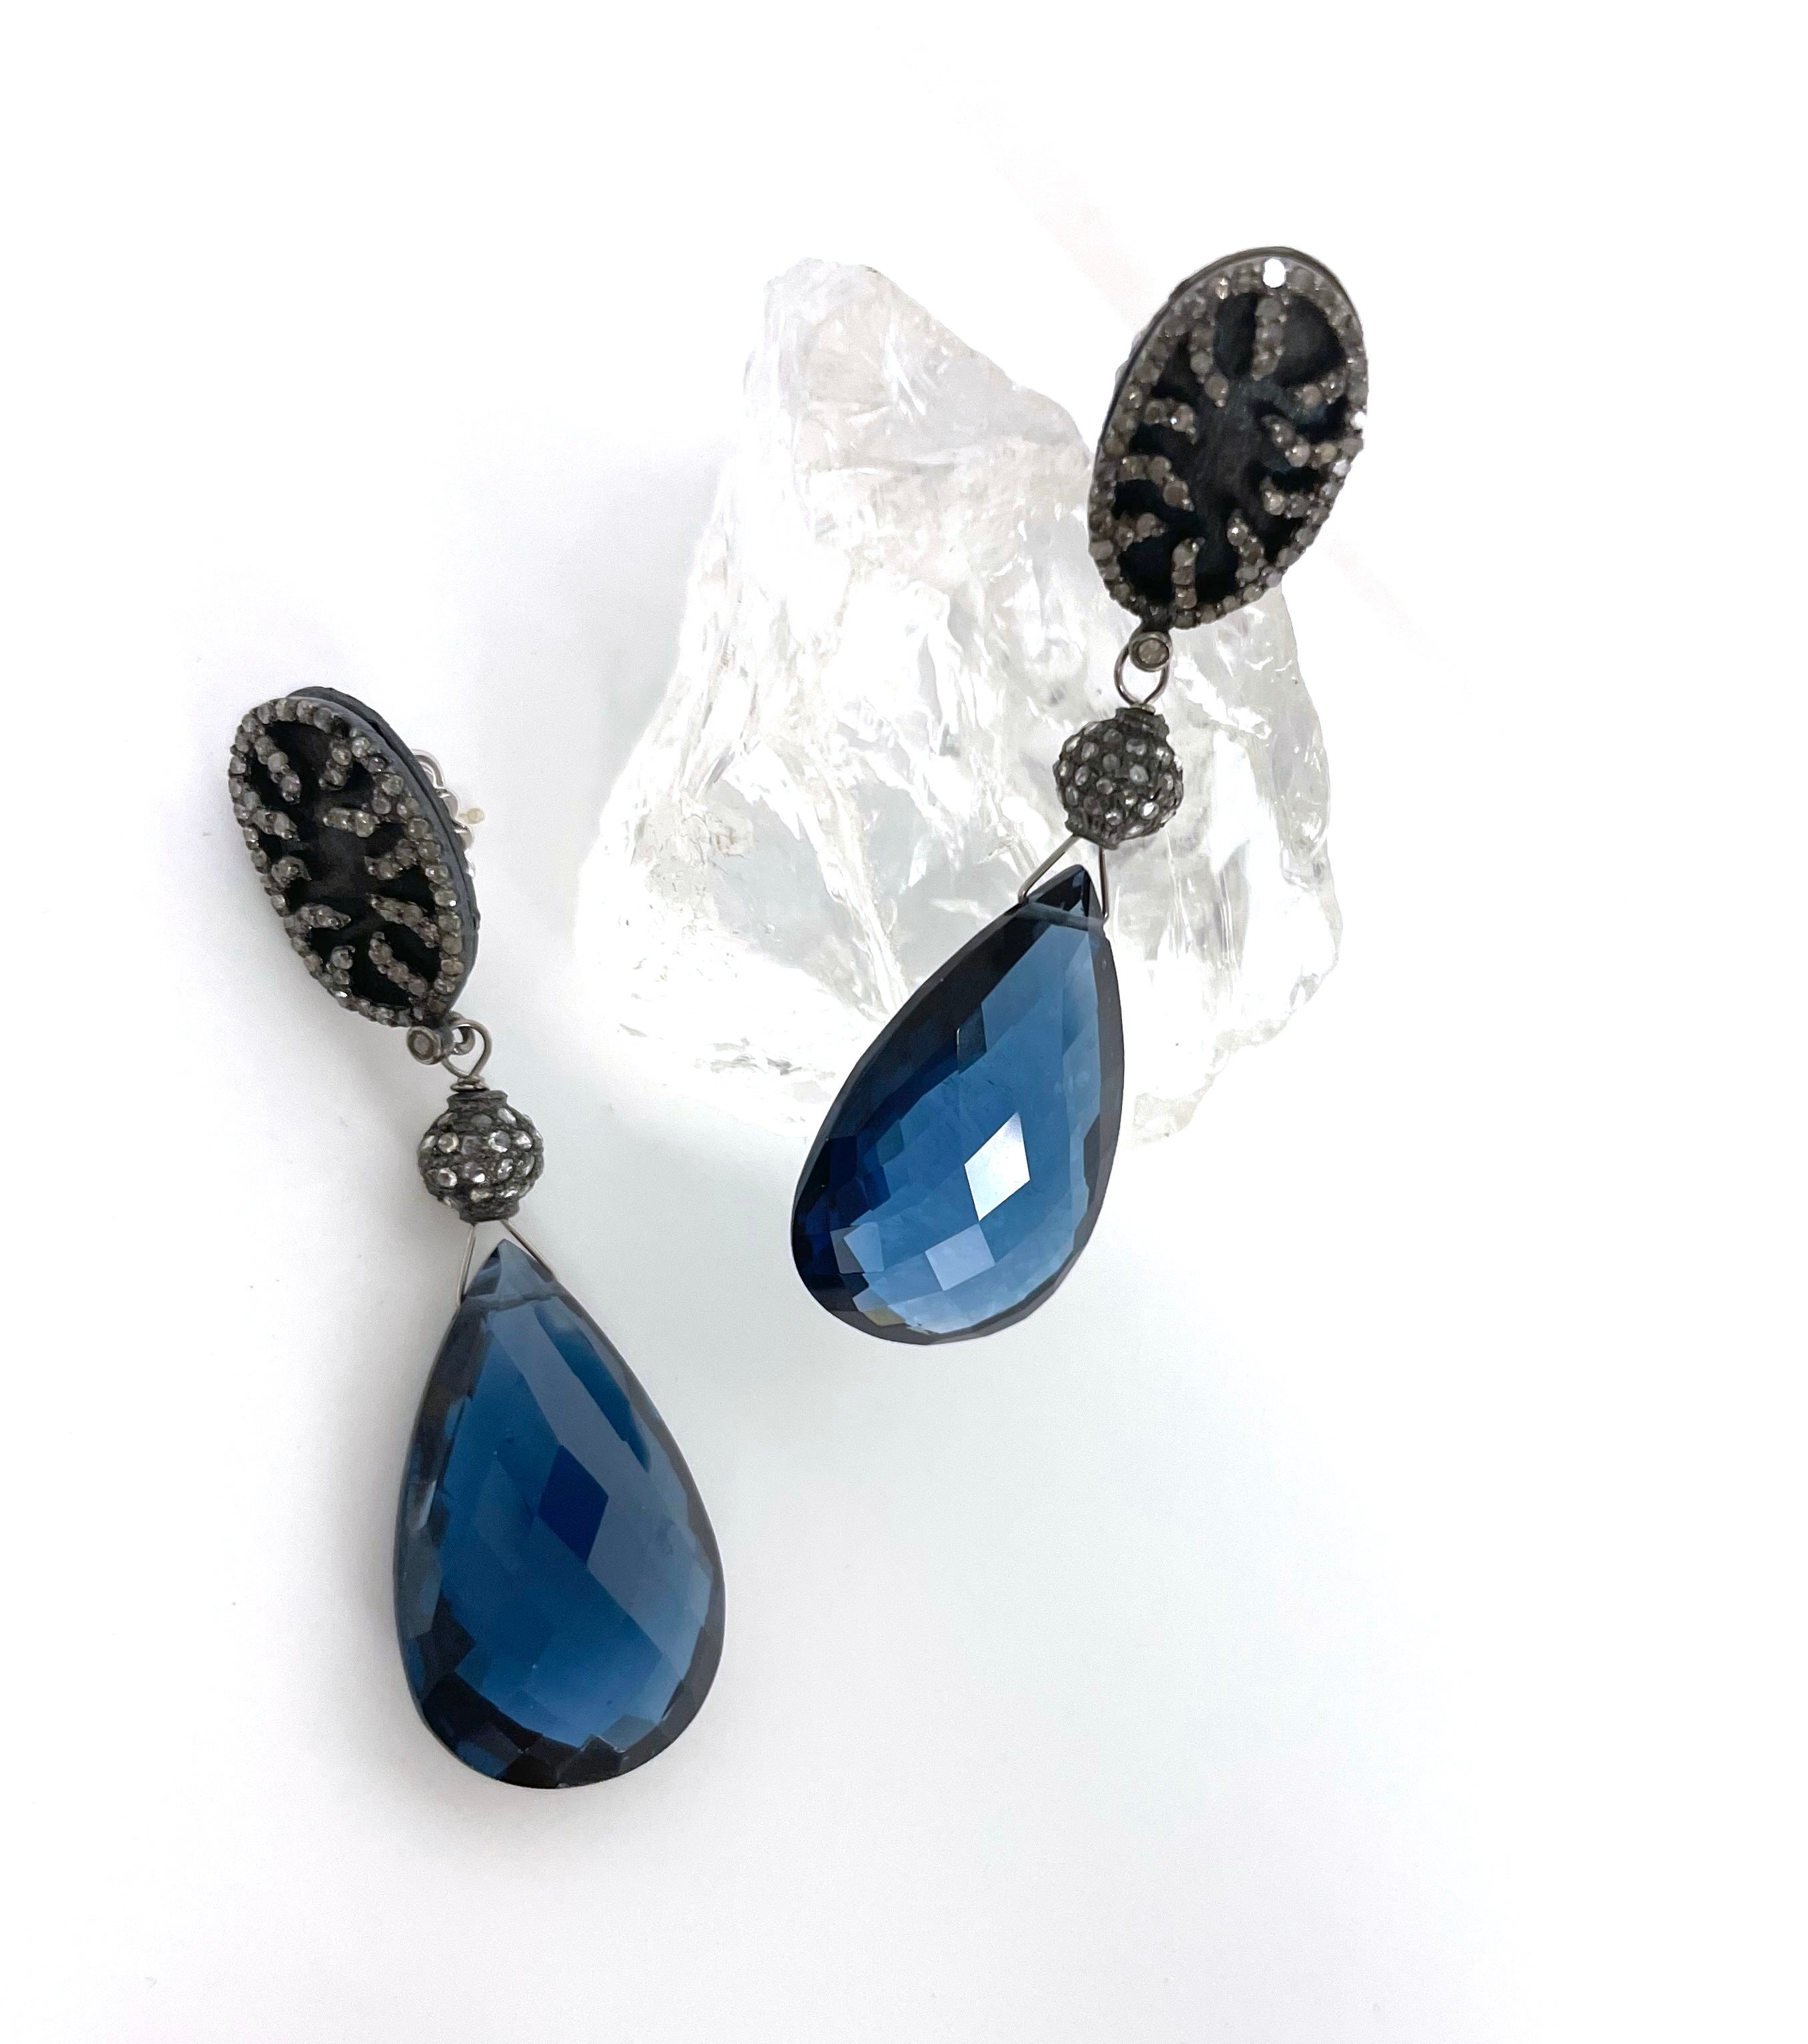 Beschreibung
Die reiche und exquisite Farbe dieser Ohrringe bleibt mit ihren großen tropfenförmigen Ohrsteckern aus Londoner Blauquarz und blauen Titanium-Diamanten mit Pflaster nicht unbemerkt. Artikel # E3210
Kombinieren Sie es mit der passenden